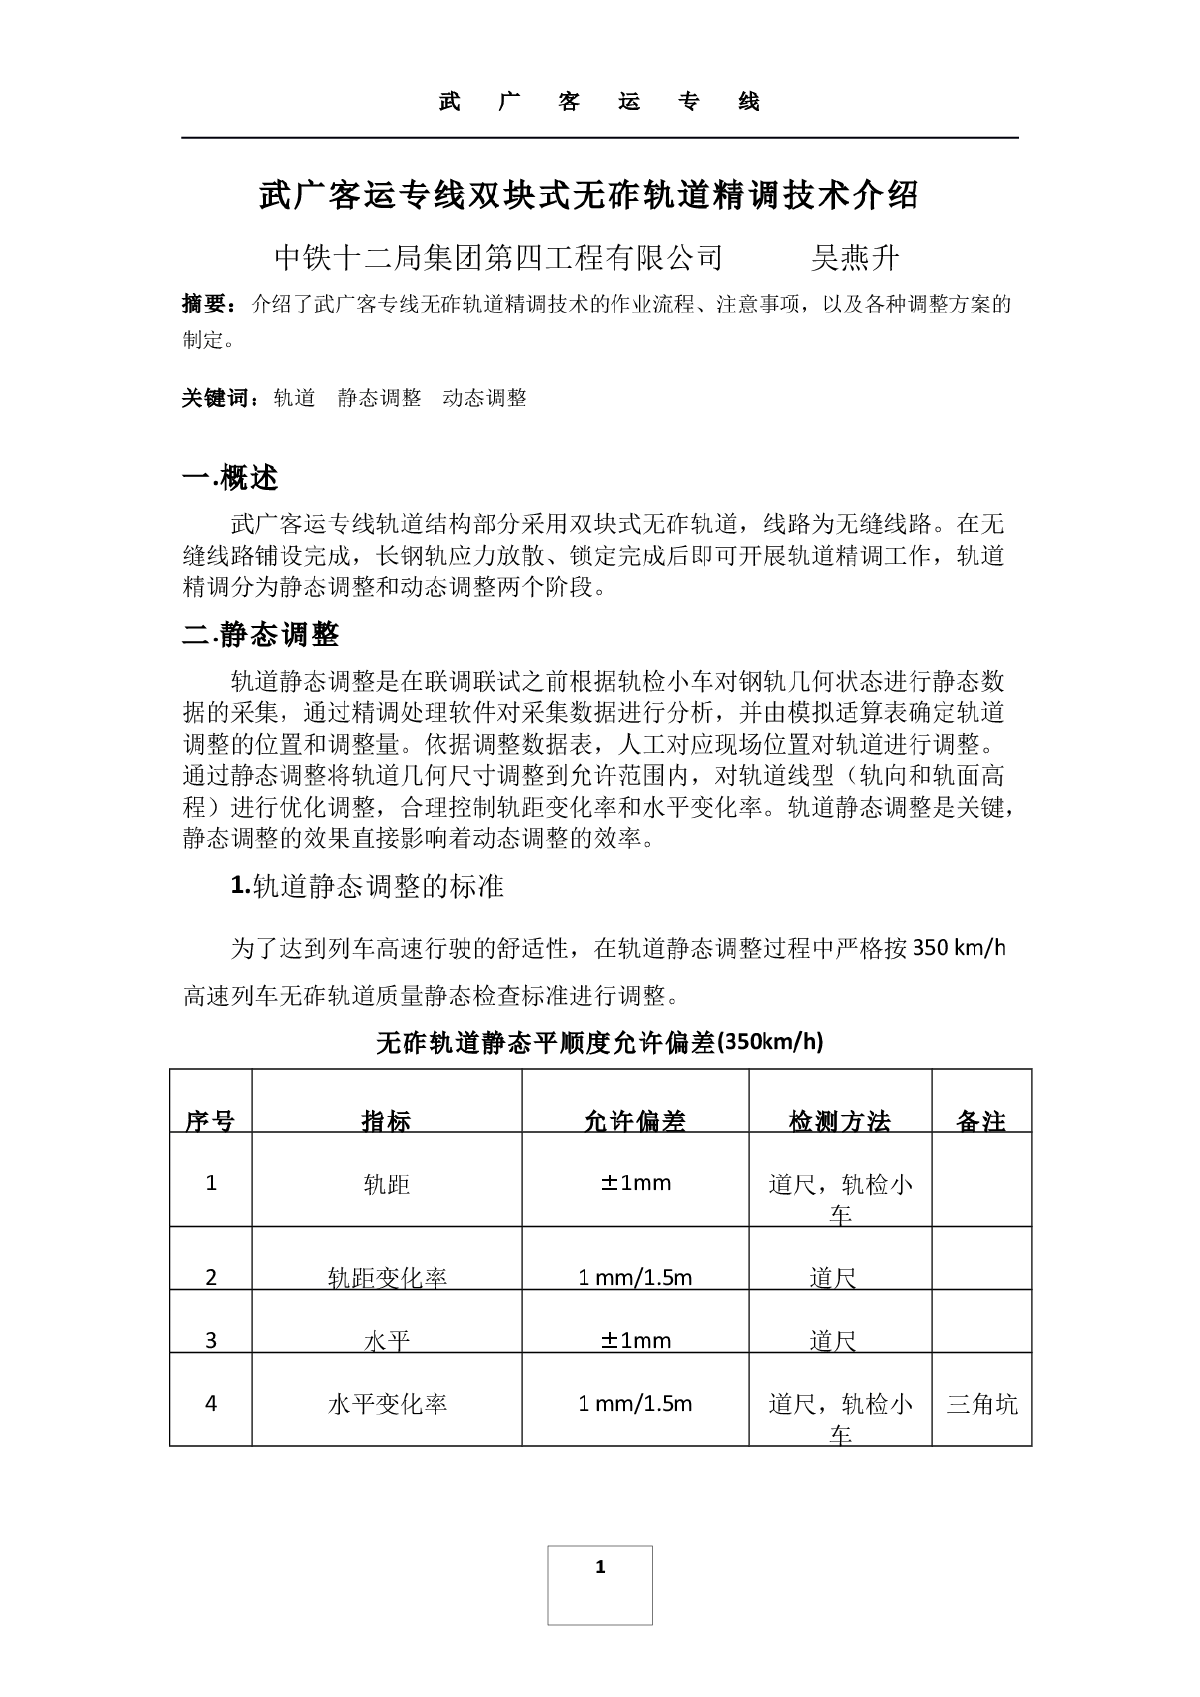 武广客运专线双块式无砟轨道精调技术介绍